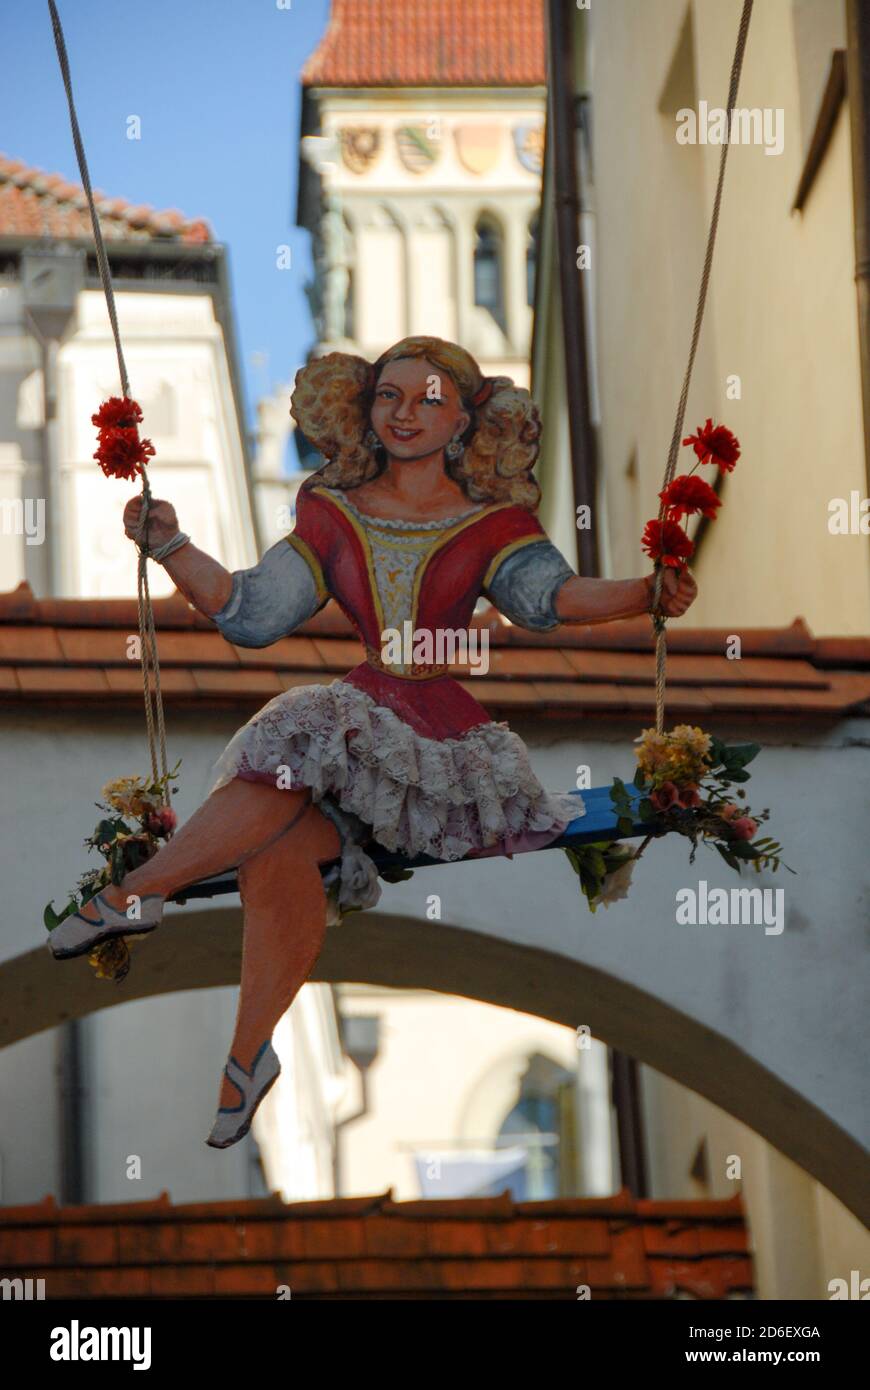 Ein lachendes Mädchen ziert das Werbeschild eines Ladens in der Passauer Altstadt. A sign of a shop in Passau old town with a smiling girl Stock Photo